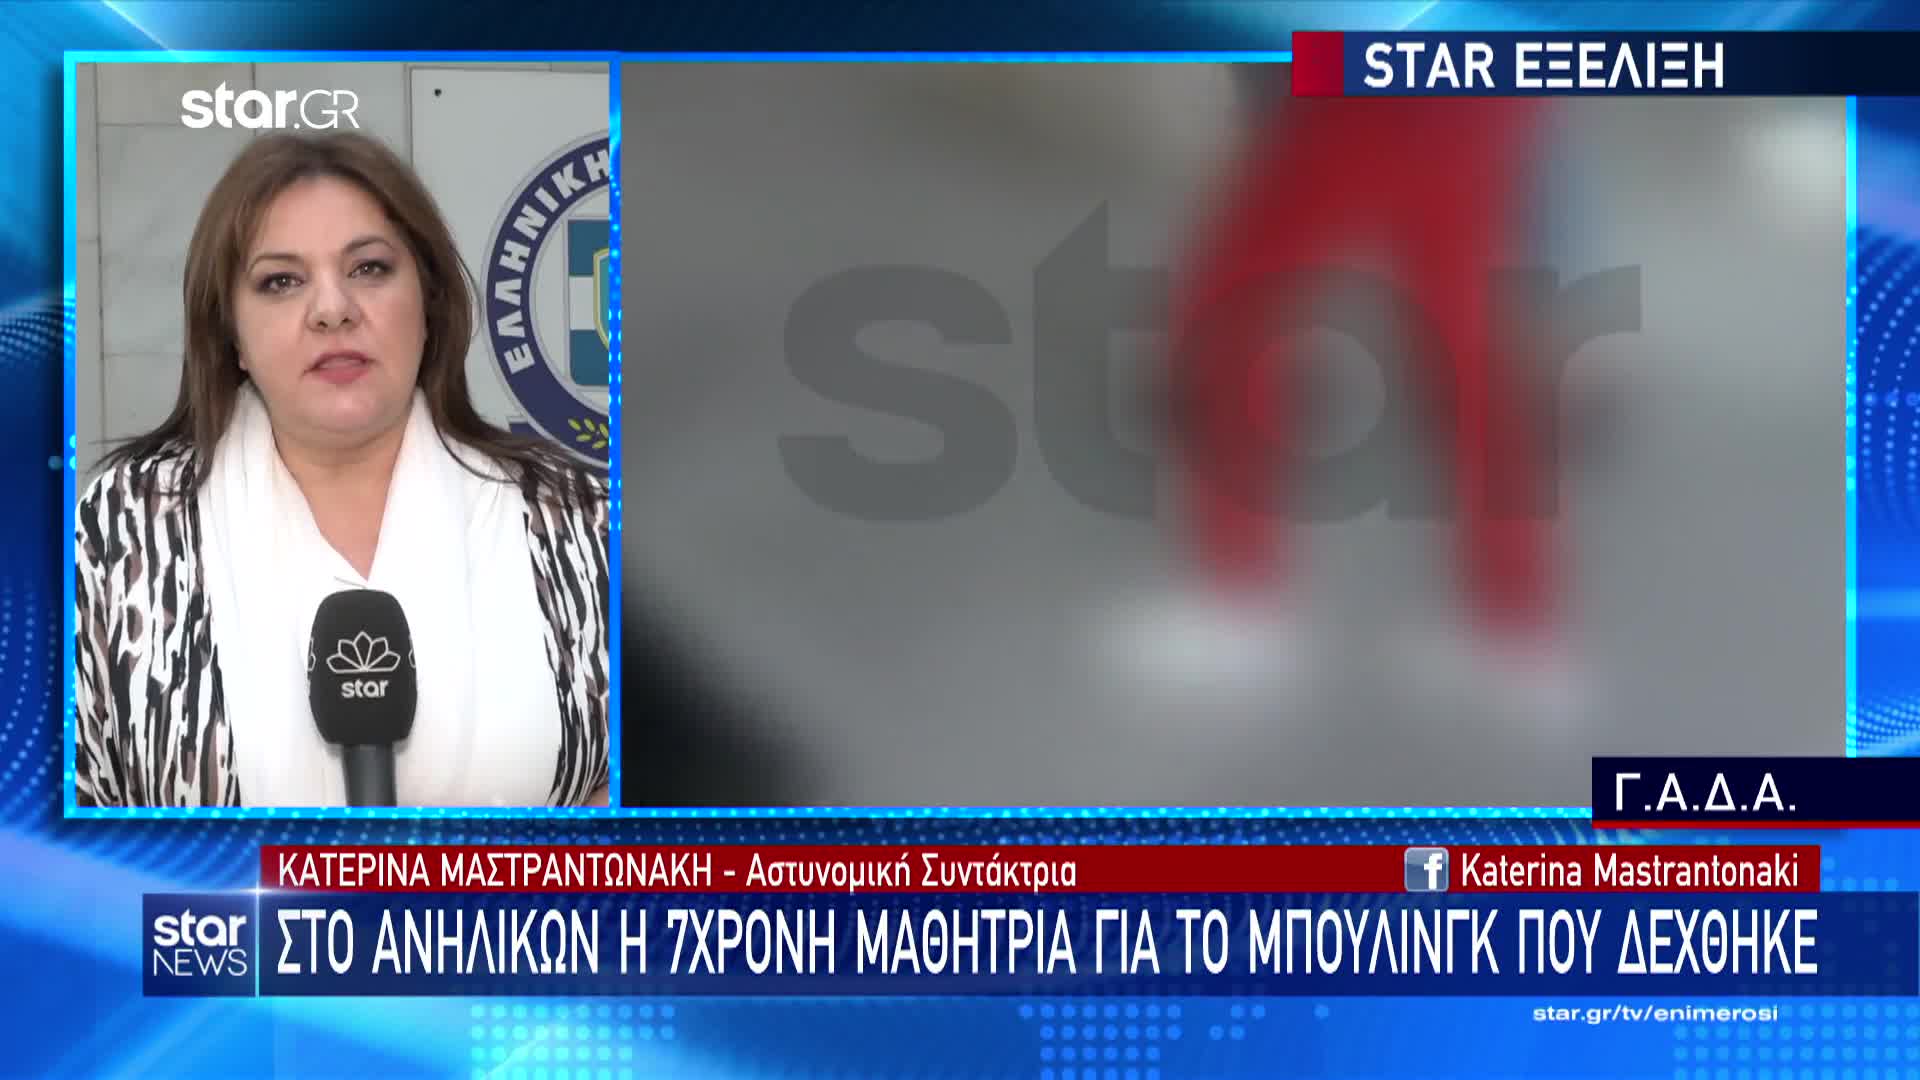  Το ρεπορτάζ της Κατερίνας Μαστραντωνάκη στο κεντρικό δελτίο ειδήσεων του Star